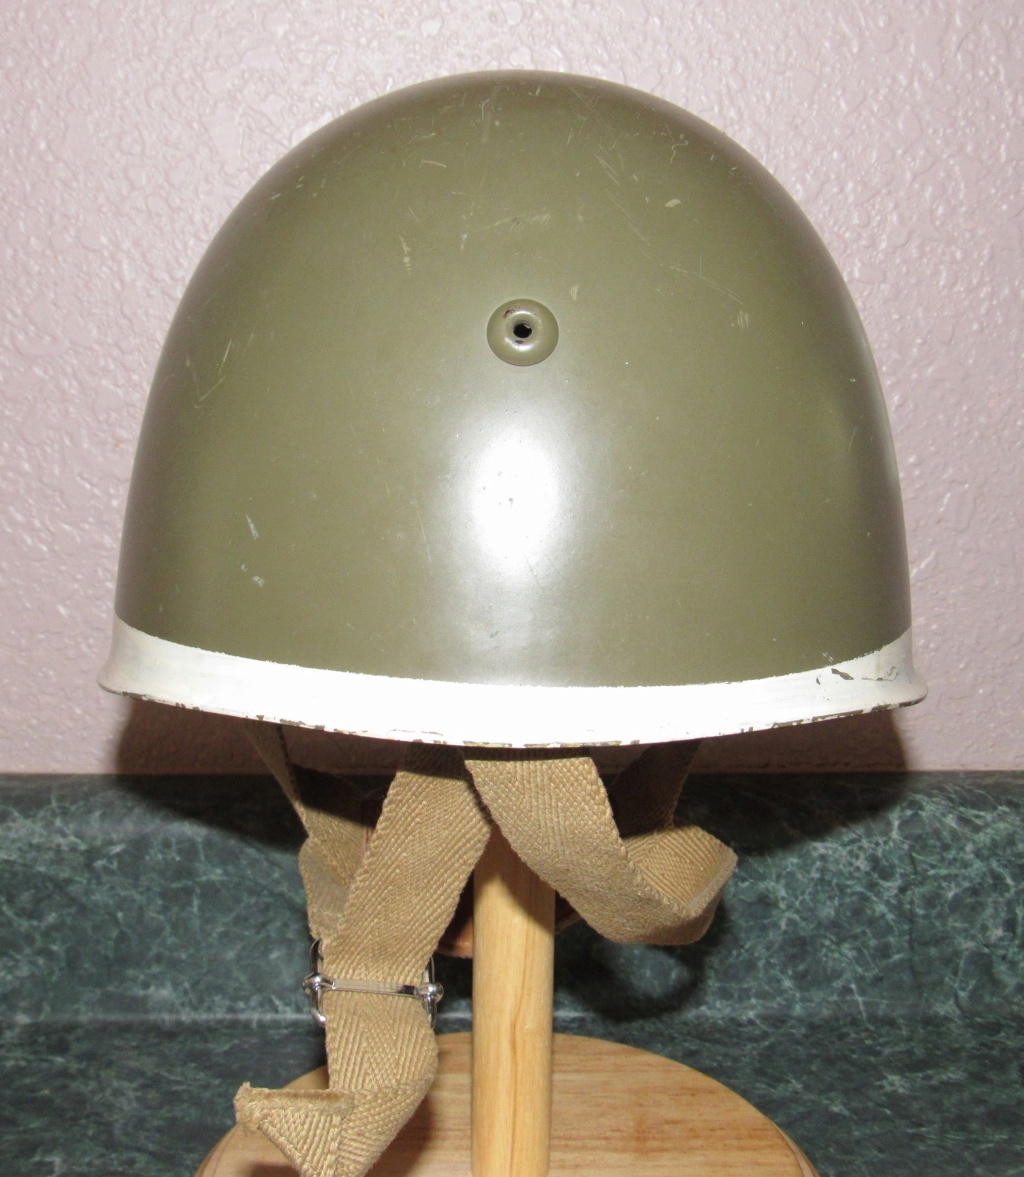 Mystery Italian M933/47 Helmet Italia14